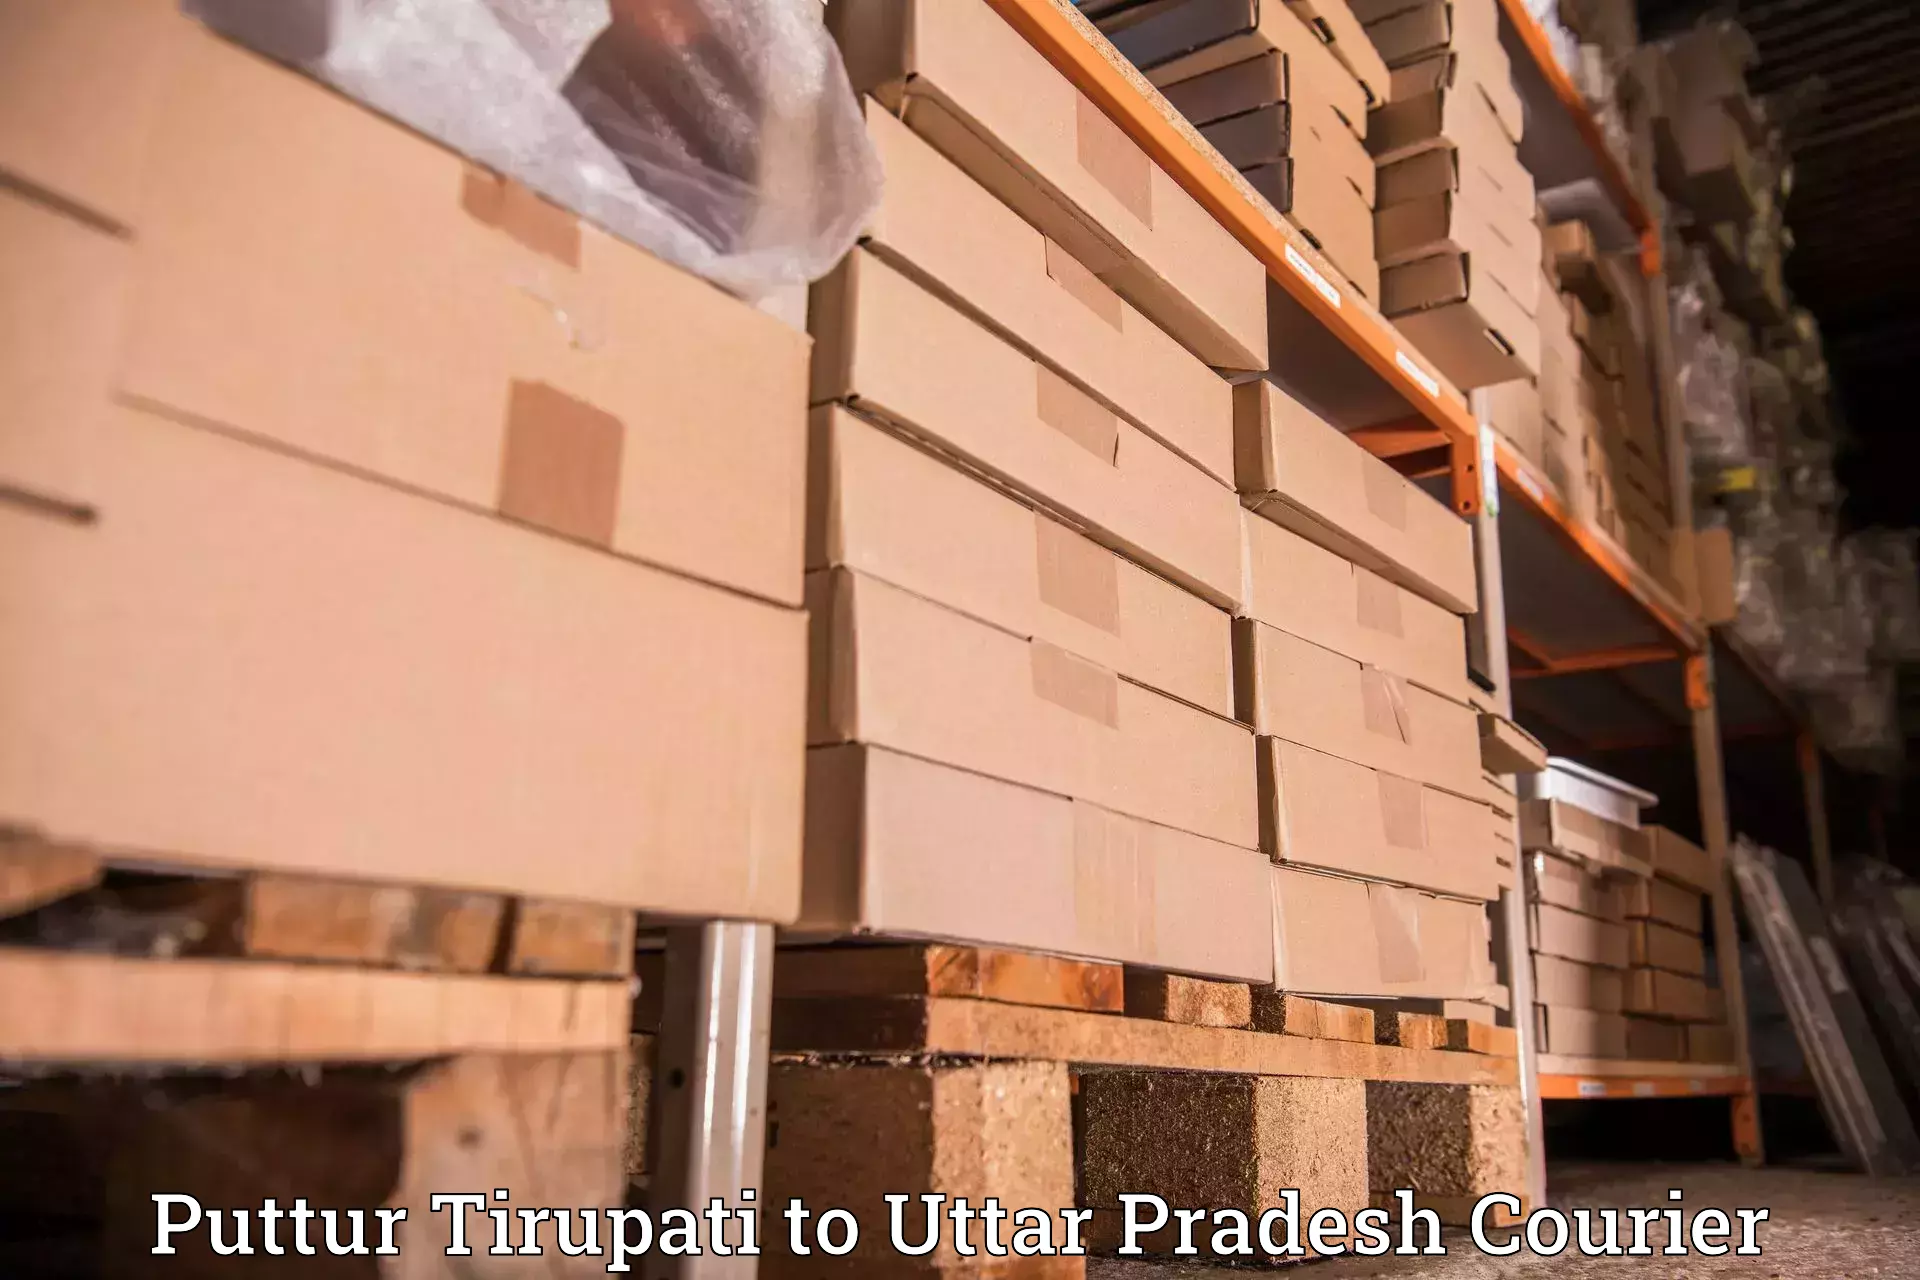 High-priority parcel service Puttur Tirupati to Firozabad